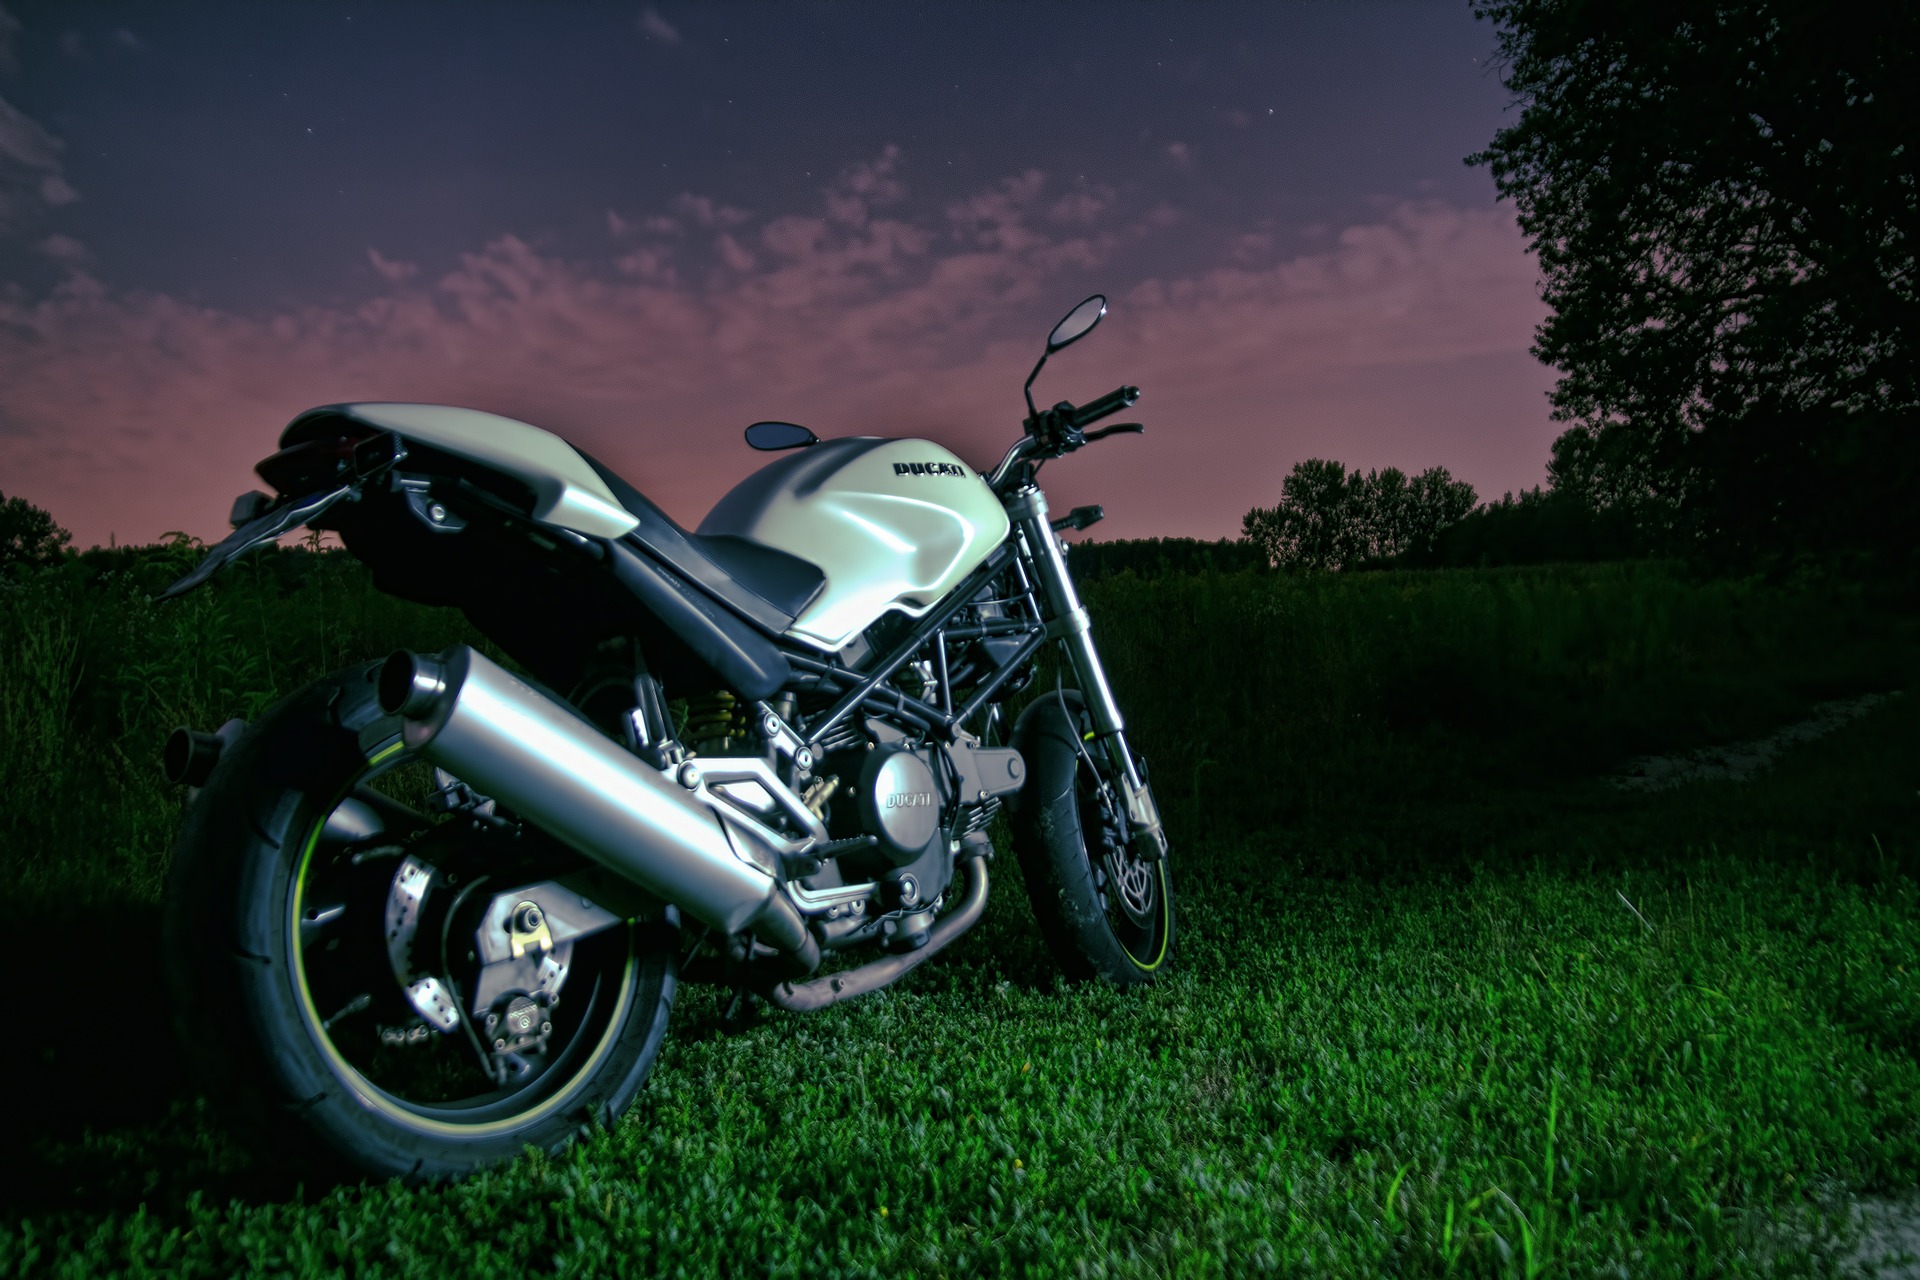 Silver Ducati Motorbike by SplitShire